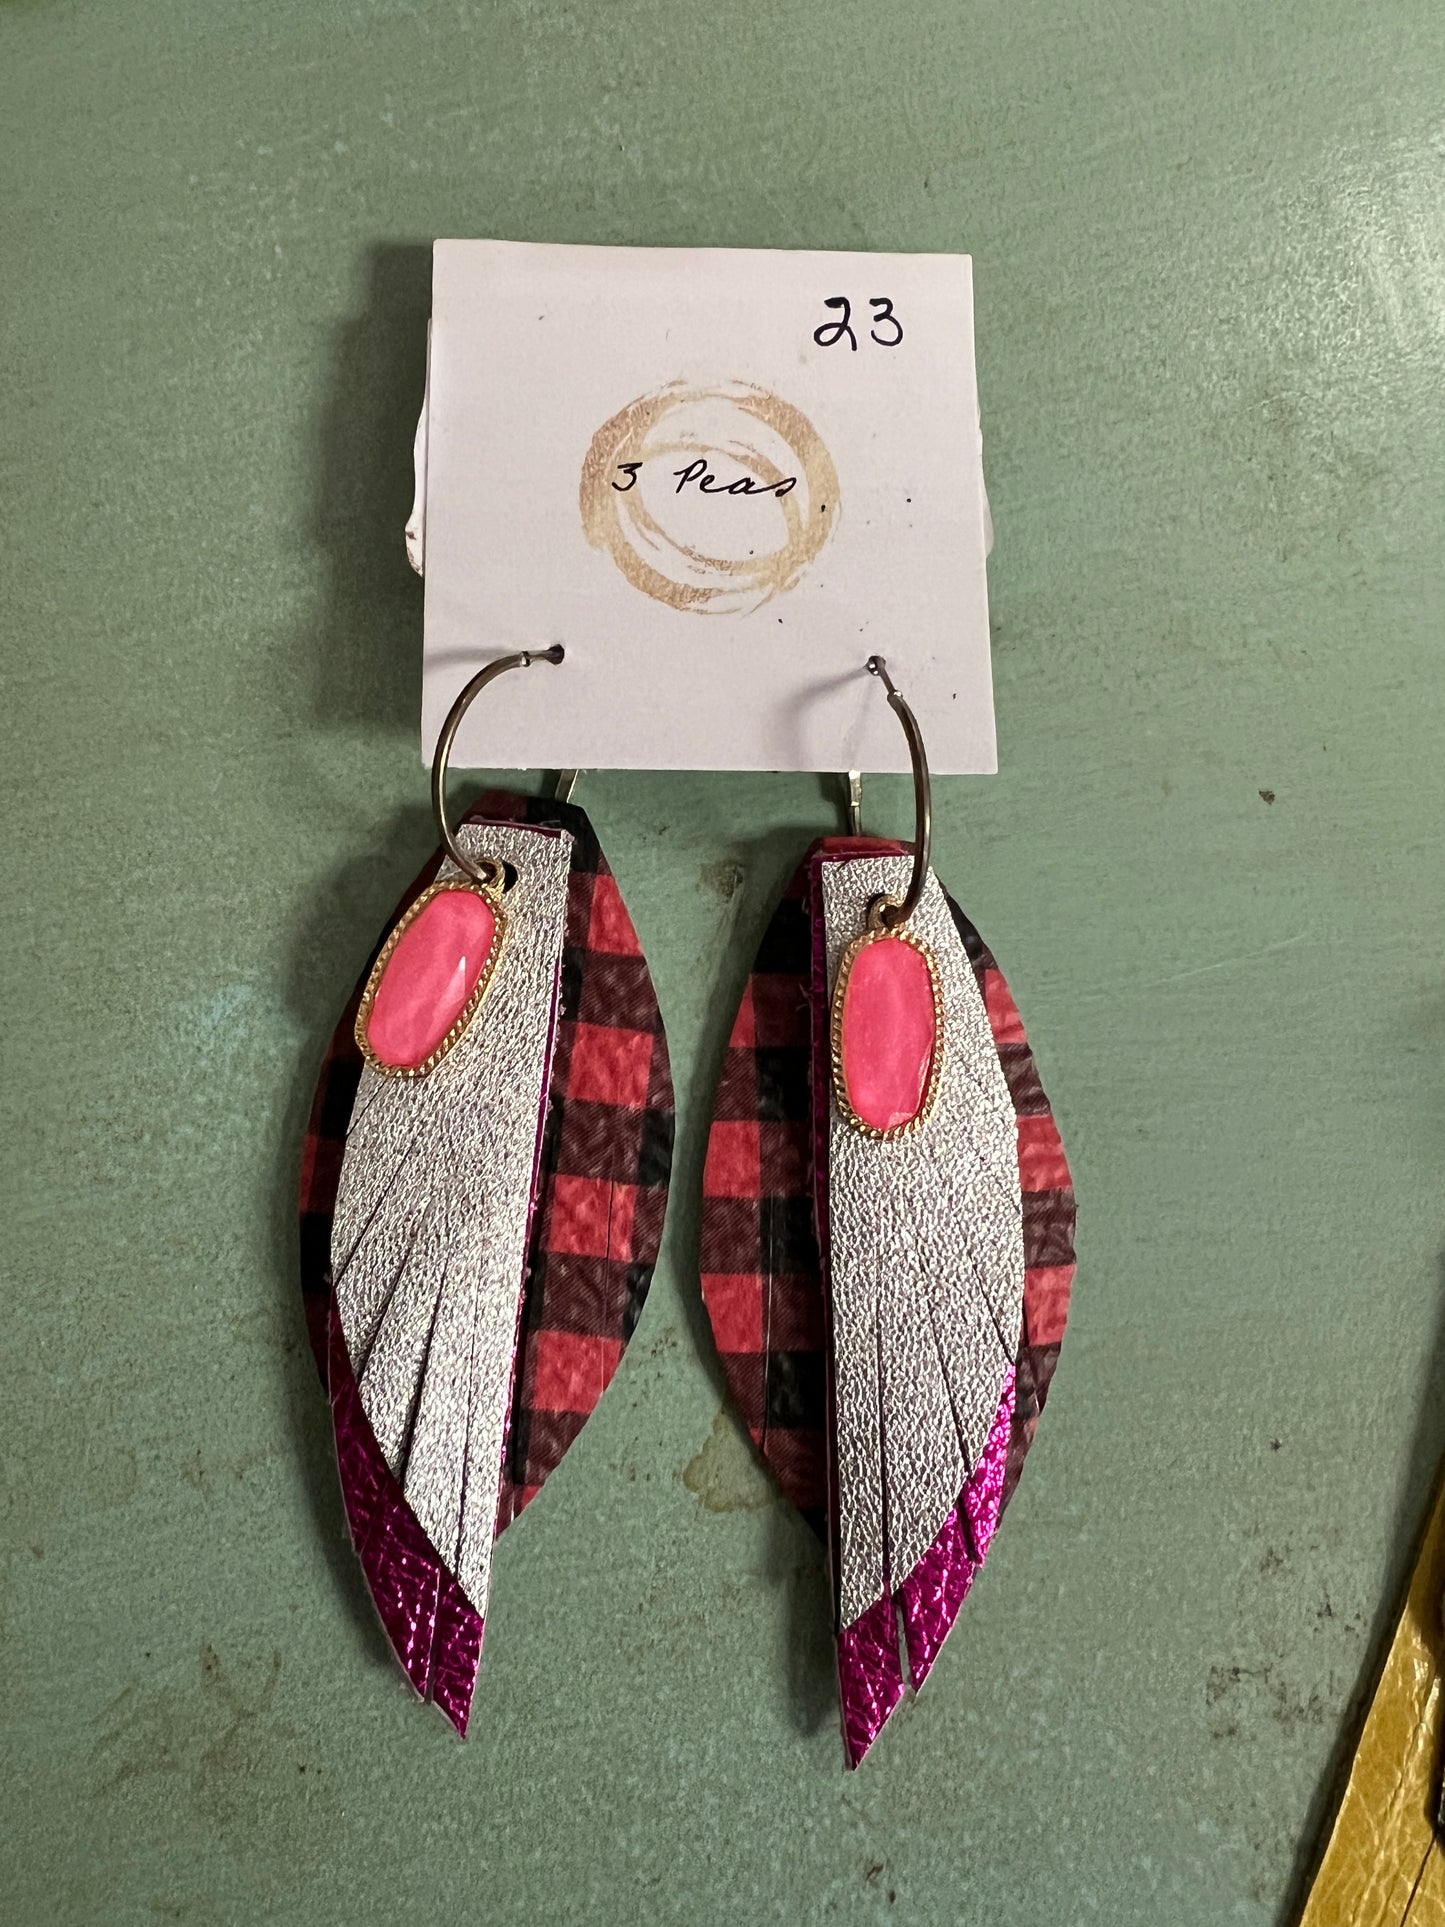 3 Peas Earrings